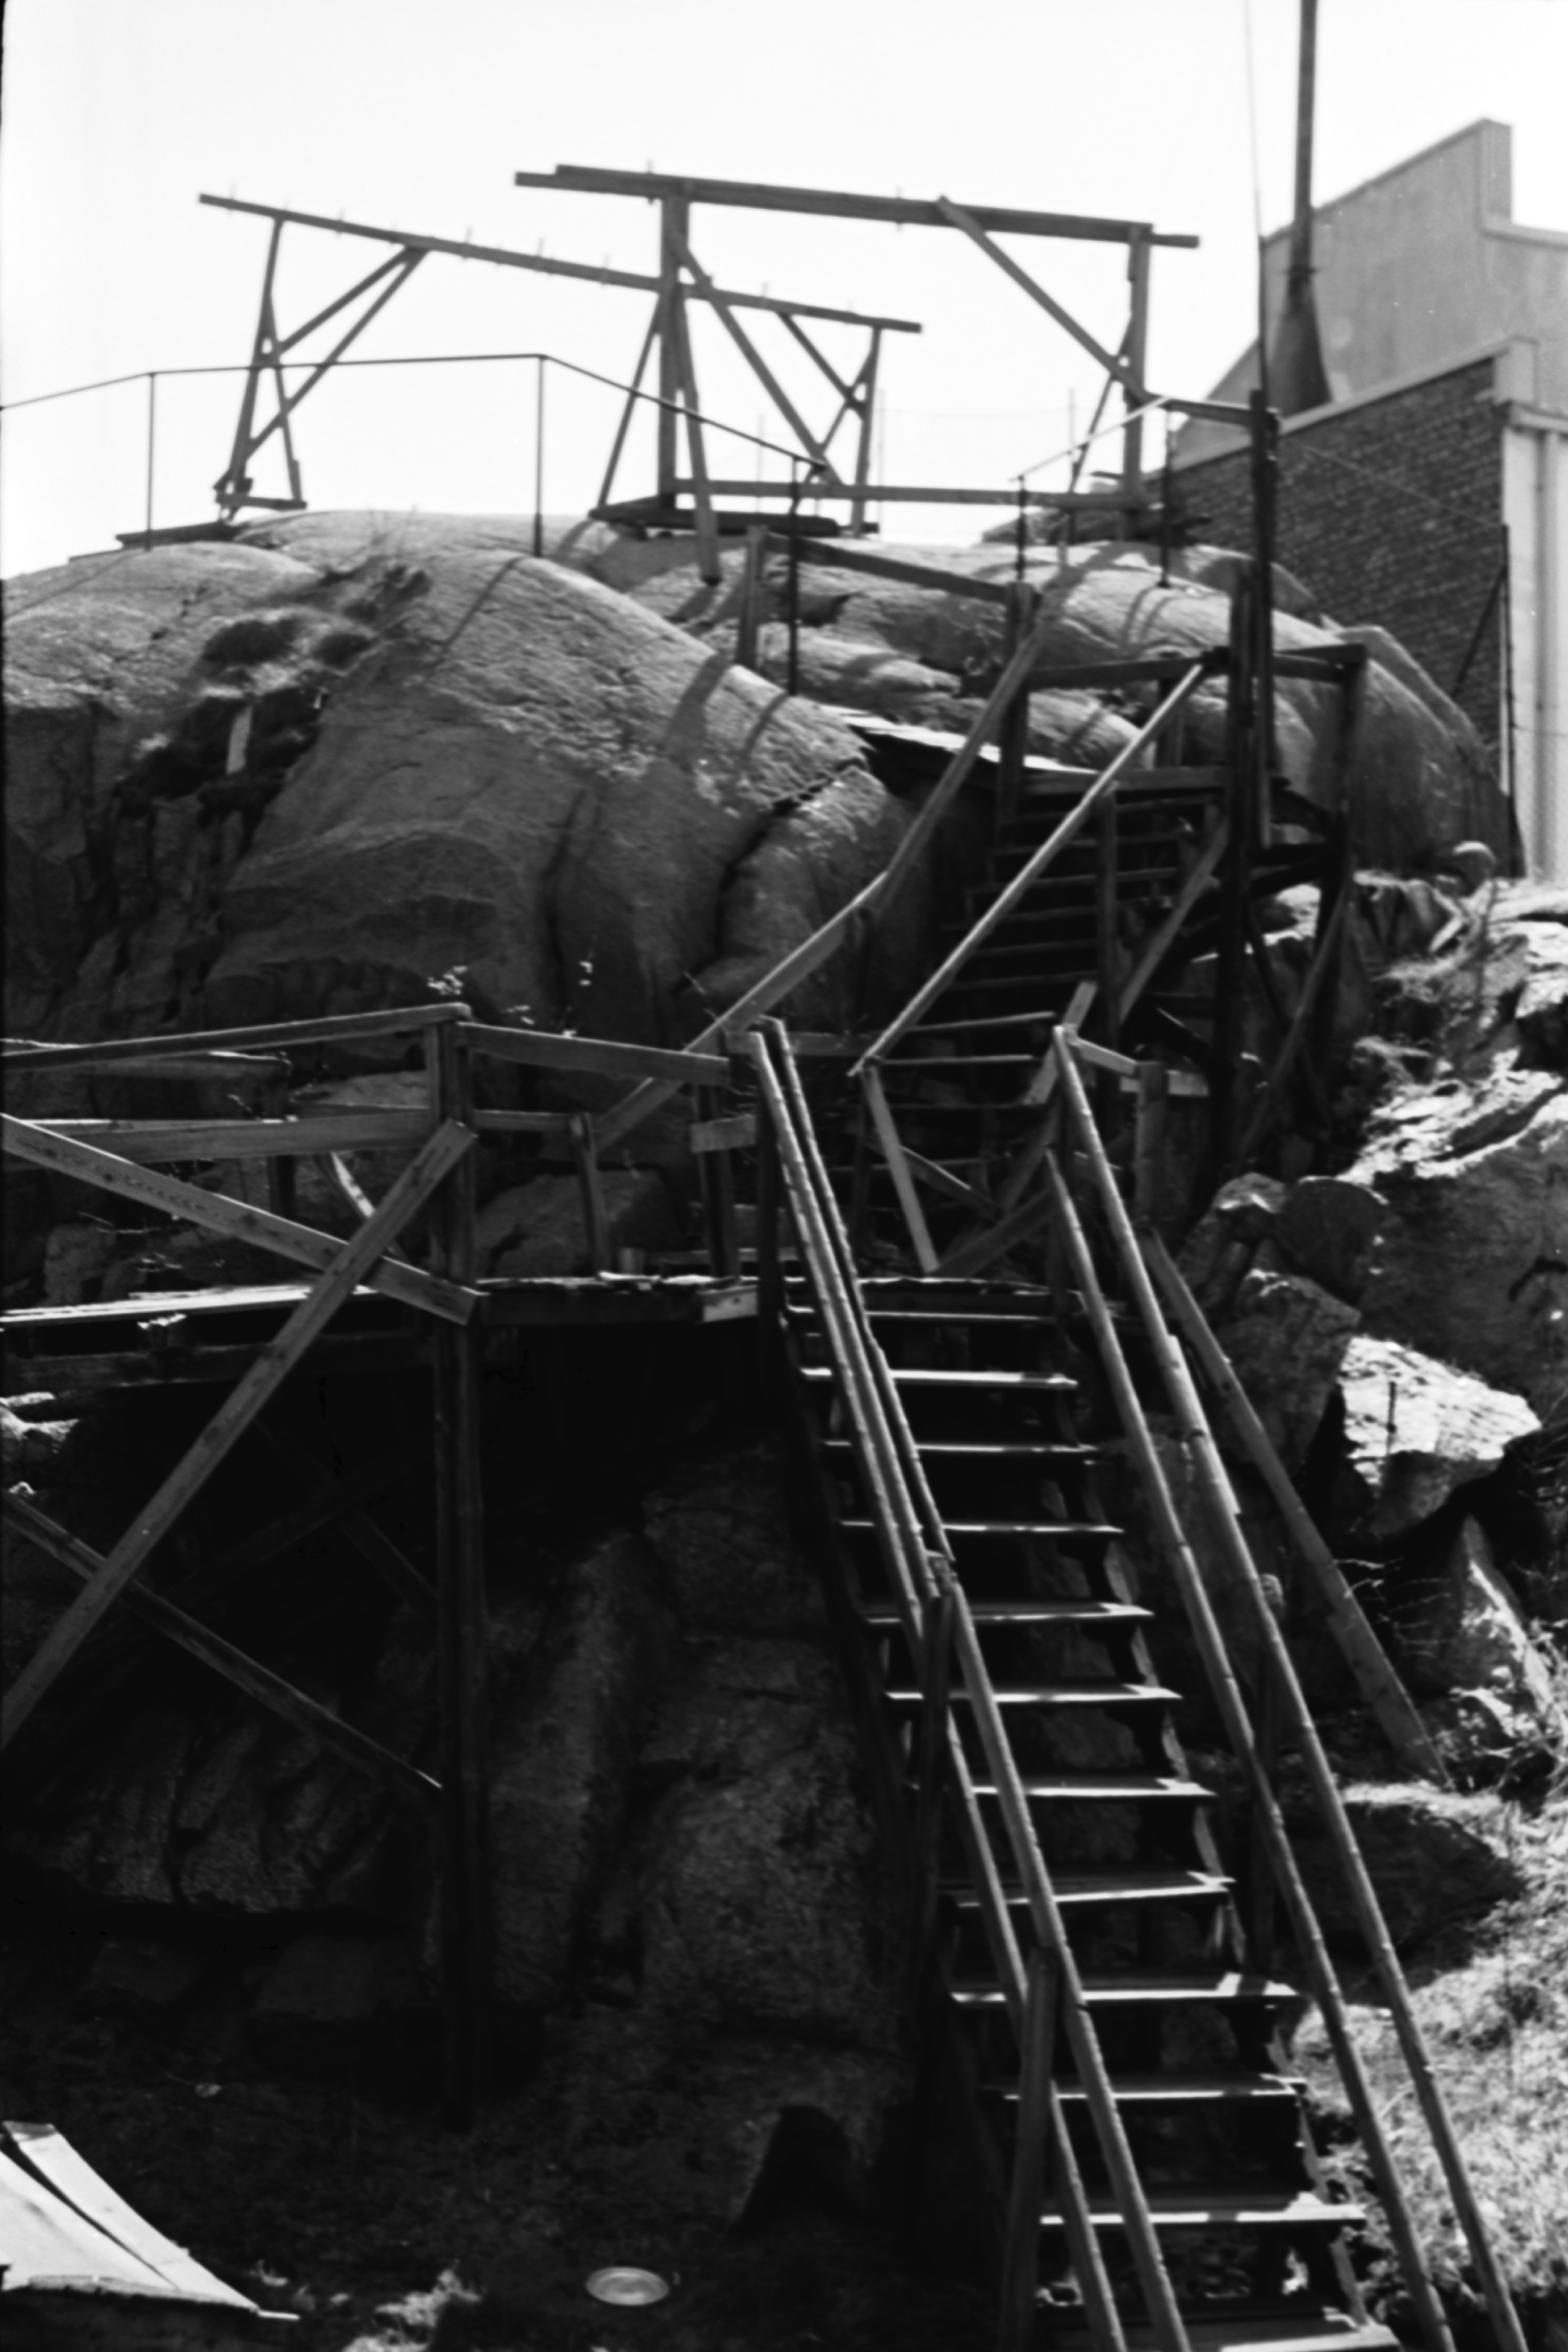 Fleminginkatu 16. Korkealle kalliolle johtavat puiset portaat Fleminginkatu 16:n pihalla Kalliossa. Kallion päällä pyykkiteline.